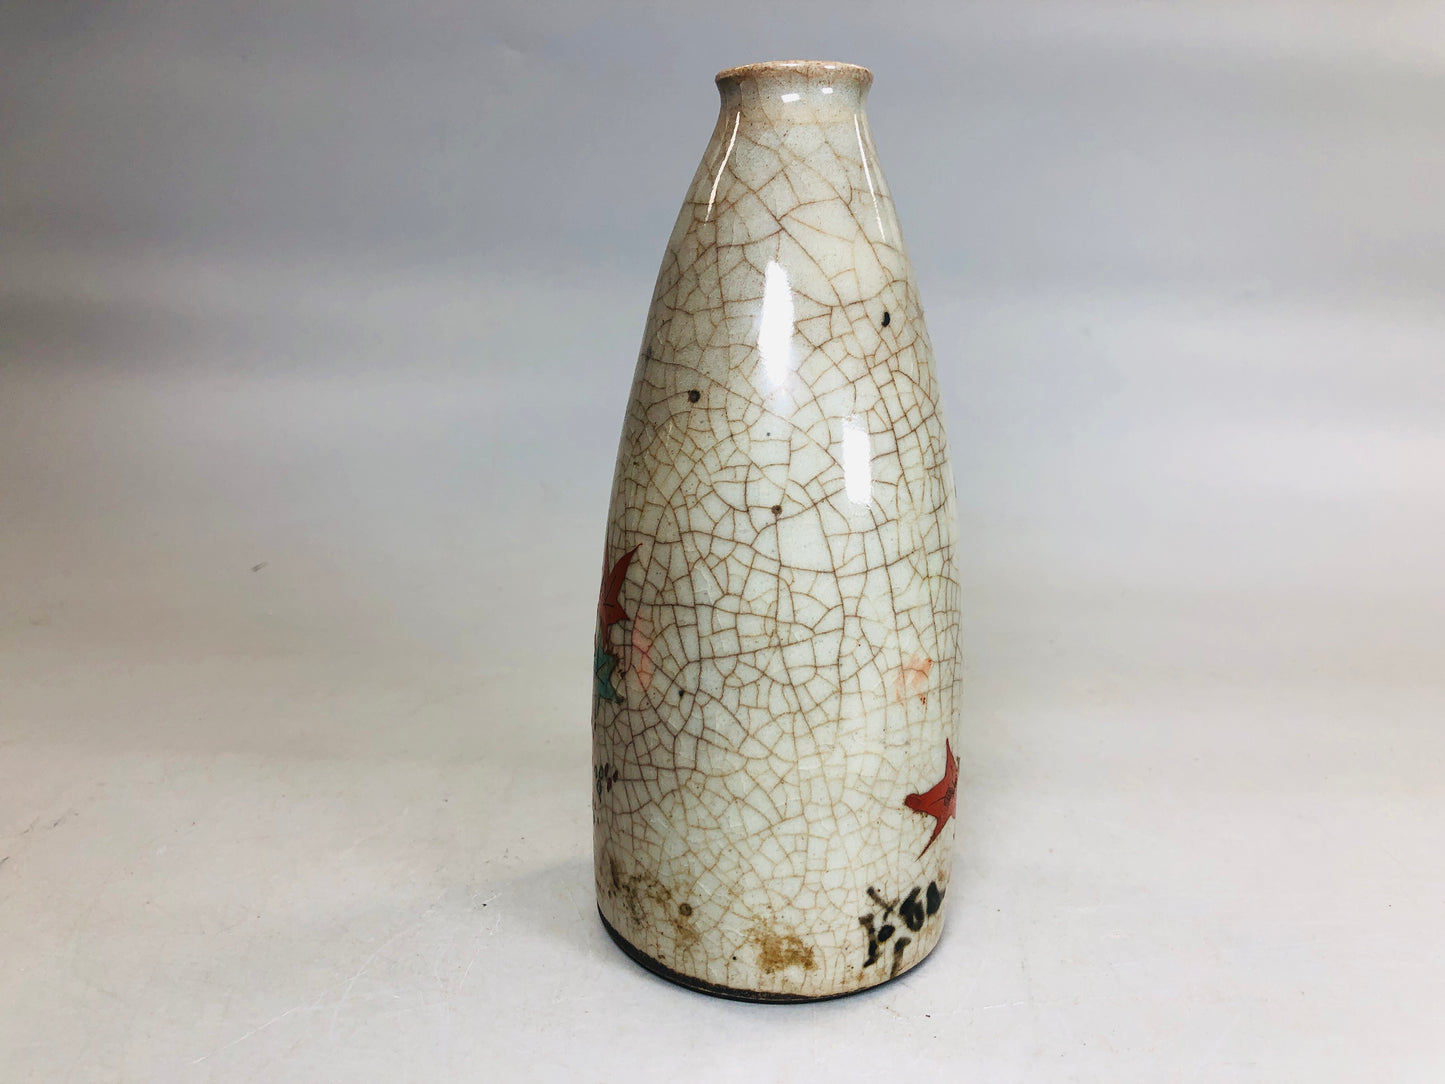 Y5775 CHOUSHI Inuyama-ware sake bottle autumn leaves signed Japan antique pot